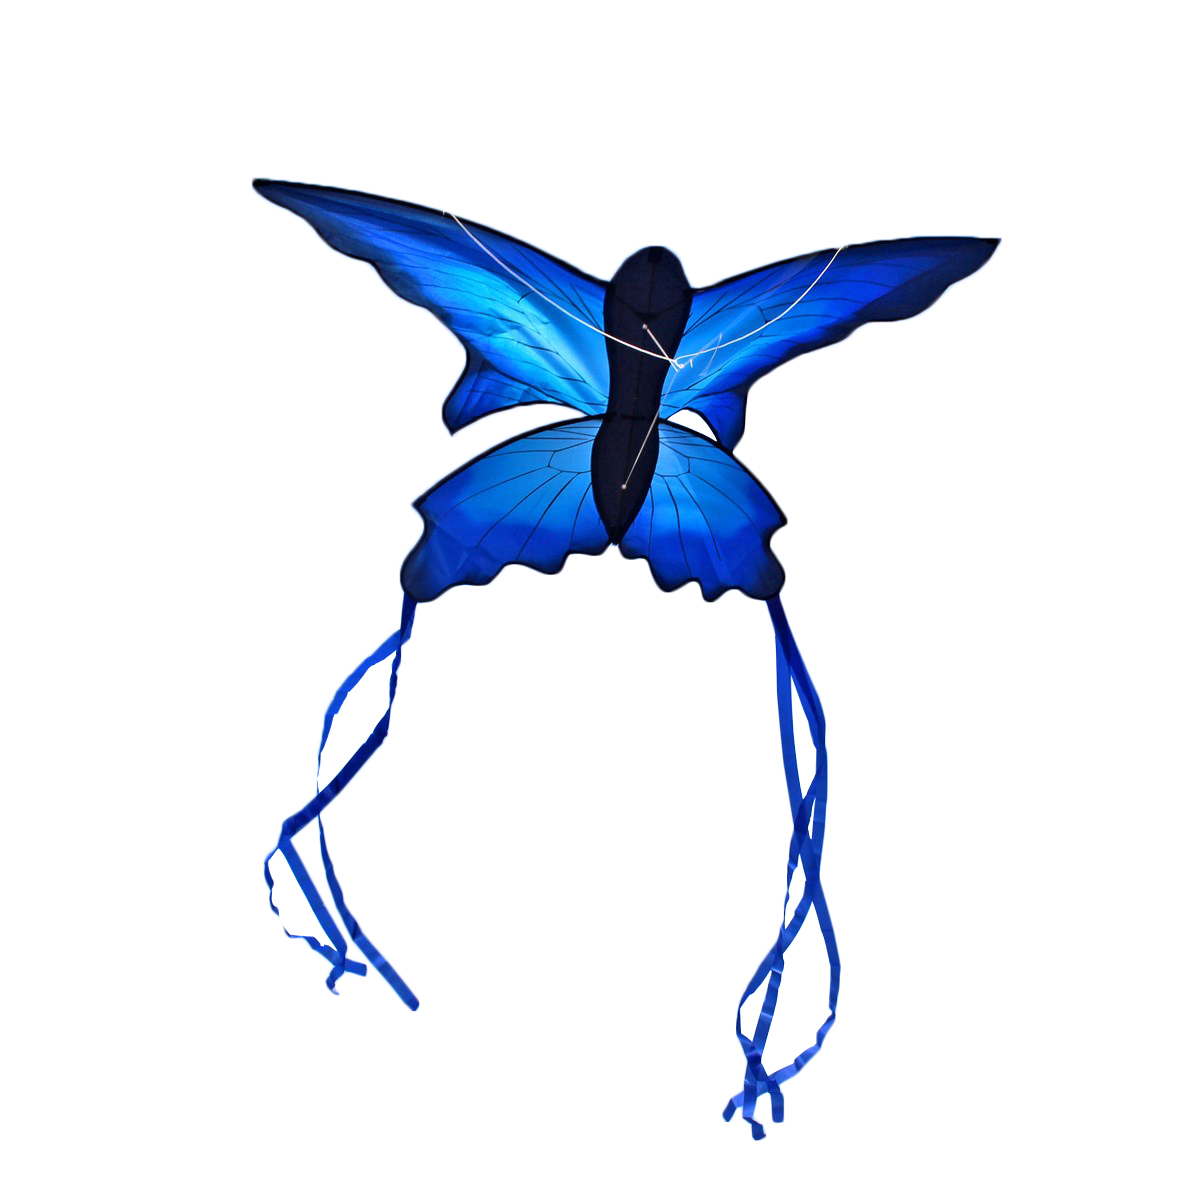 

70x150cm Blue Beautiful Butterfly Kite На открытом воздухе Веселая спортивная летная игрушка с 30-миллиметровой панелью управления и линией